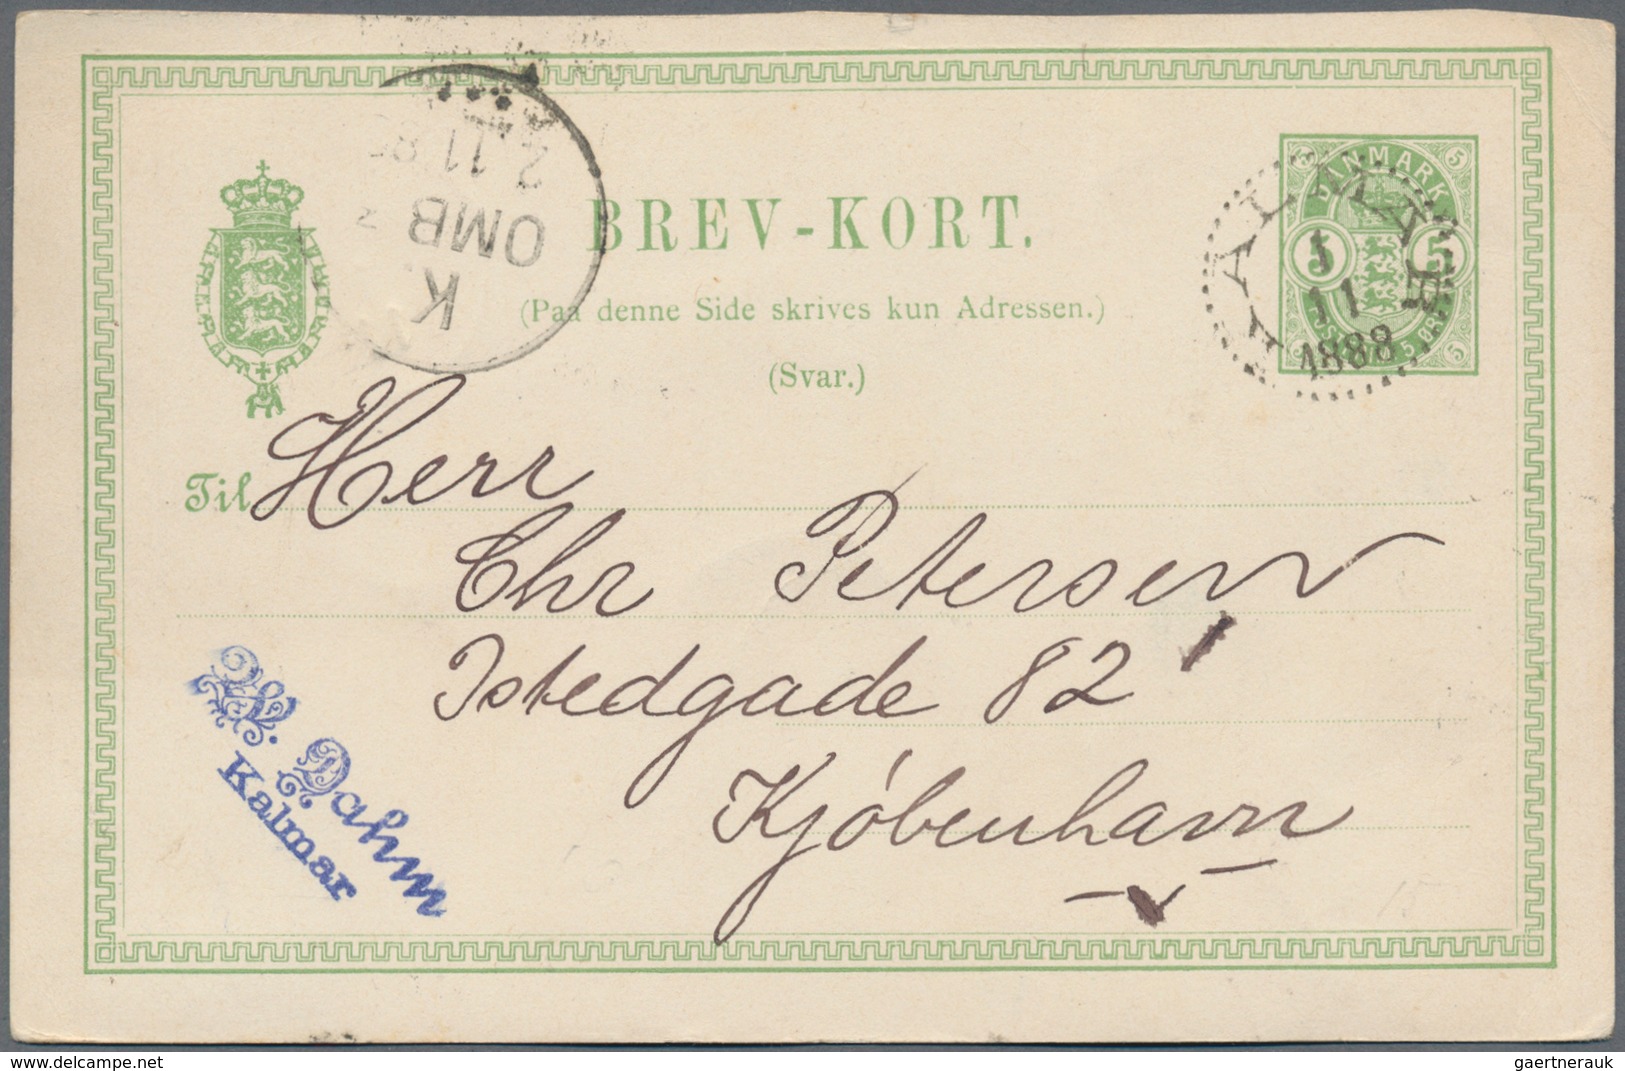 Dänemark: 1871/1995 ca. 250 unused/CTO-used/used postal stationeries (postal stationery cards and en